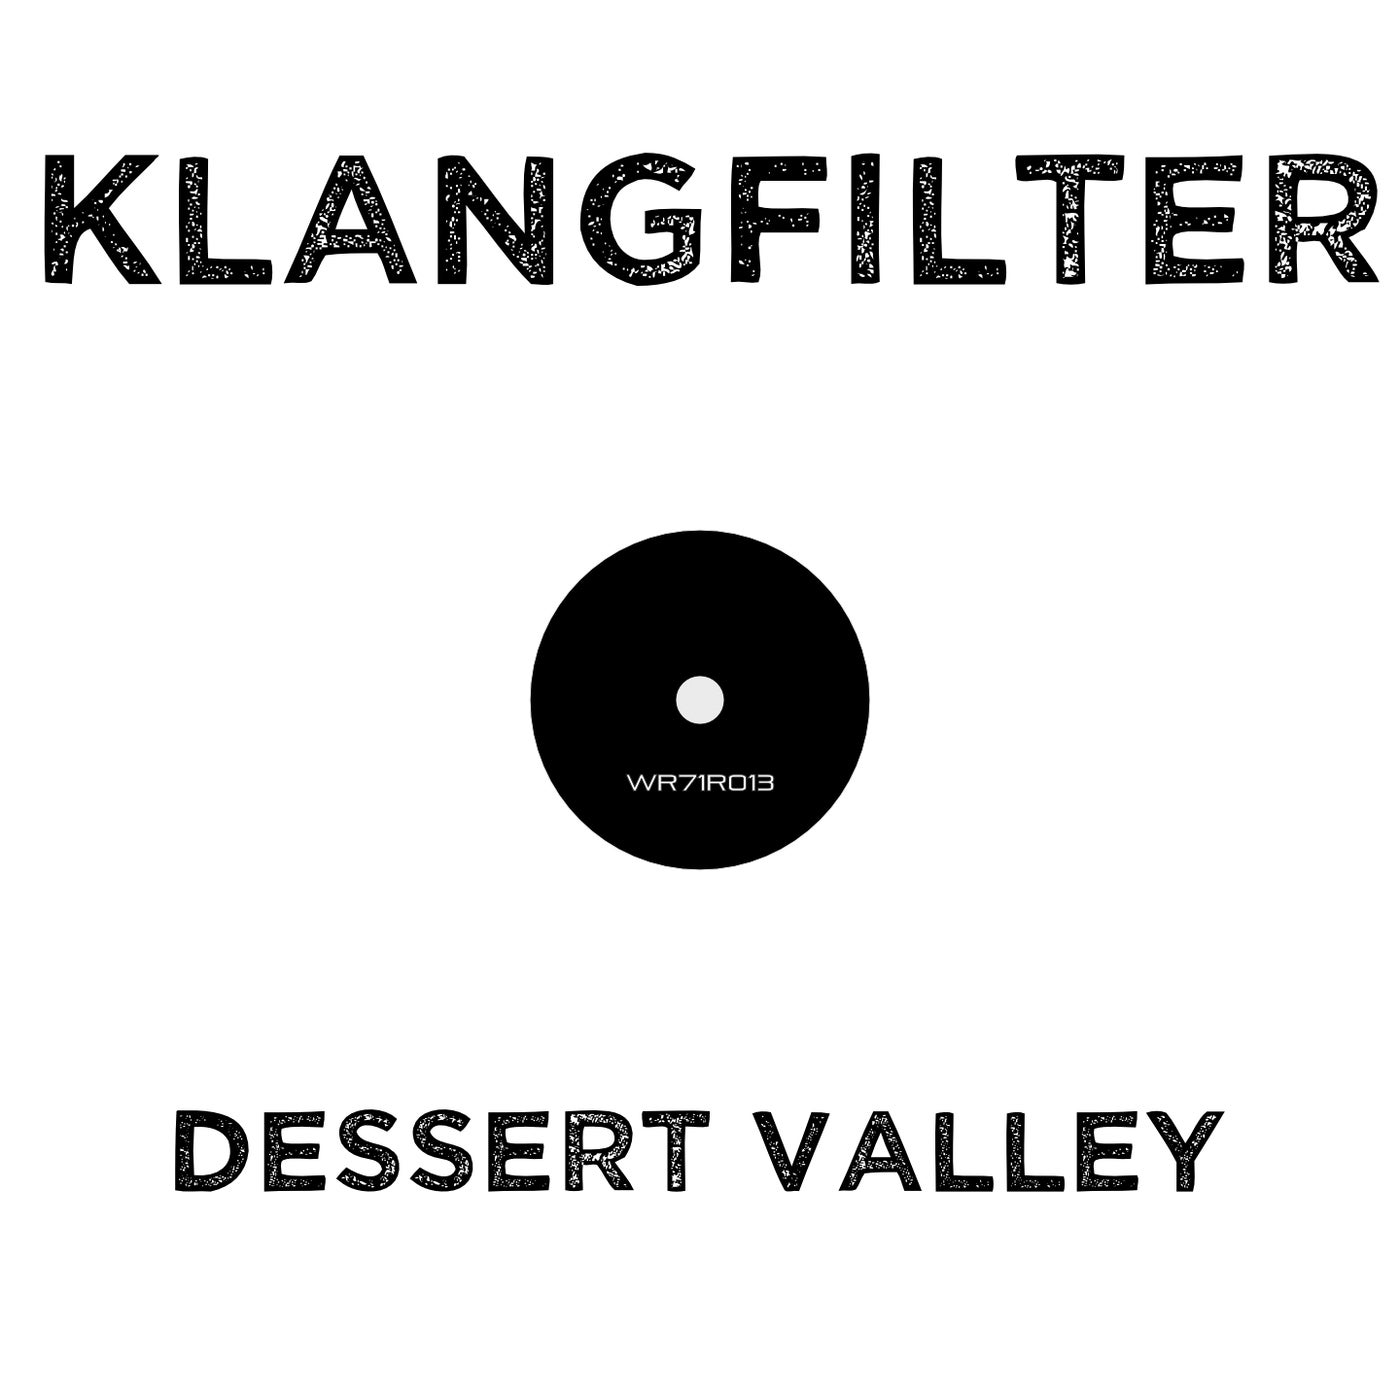 Dessert Valley